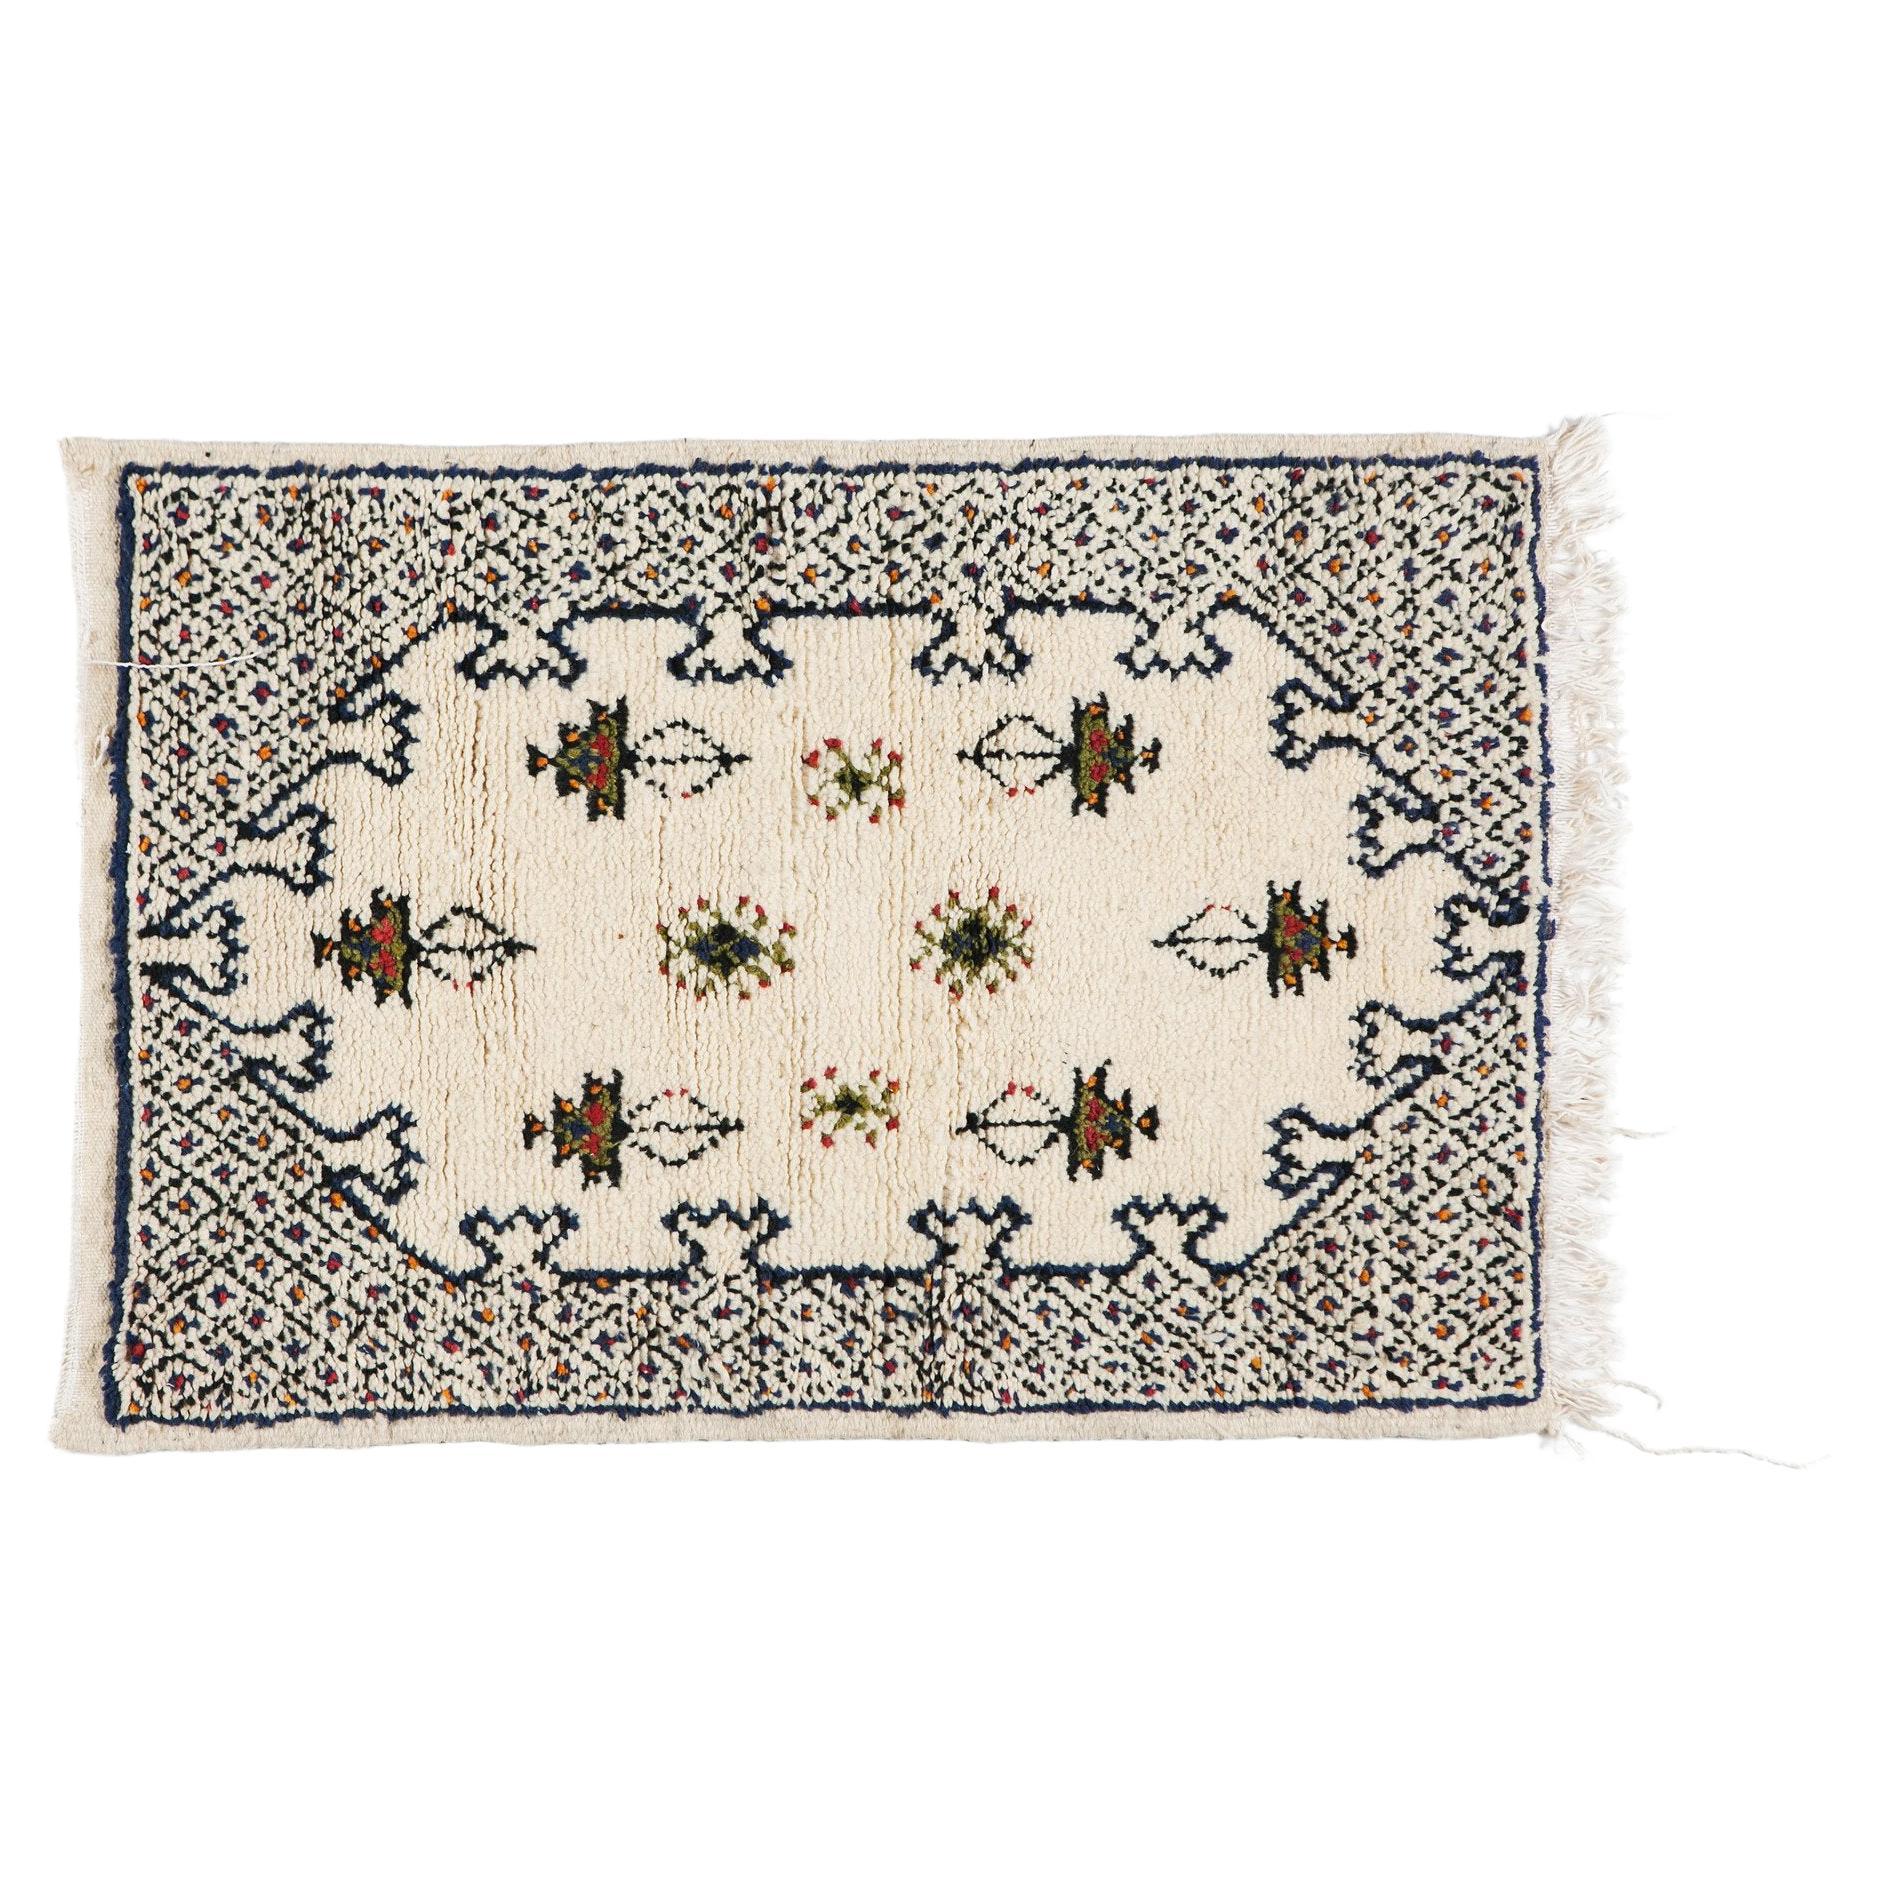 Marokkanischer handgewebter Teppich oder Teppich aus weißer Wolle mit Stammesmotiv im Boho-Chic-Stil 